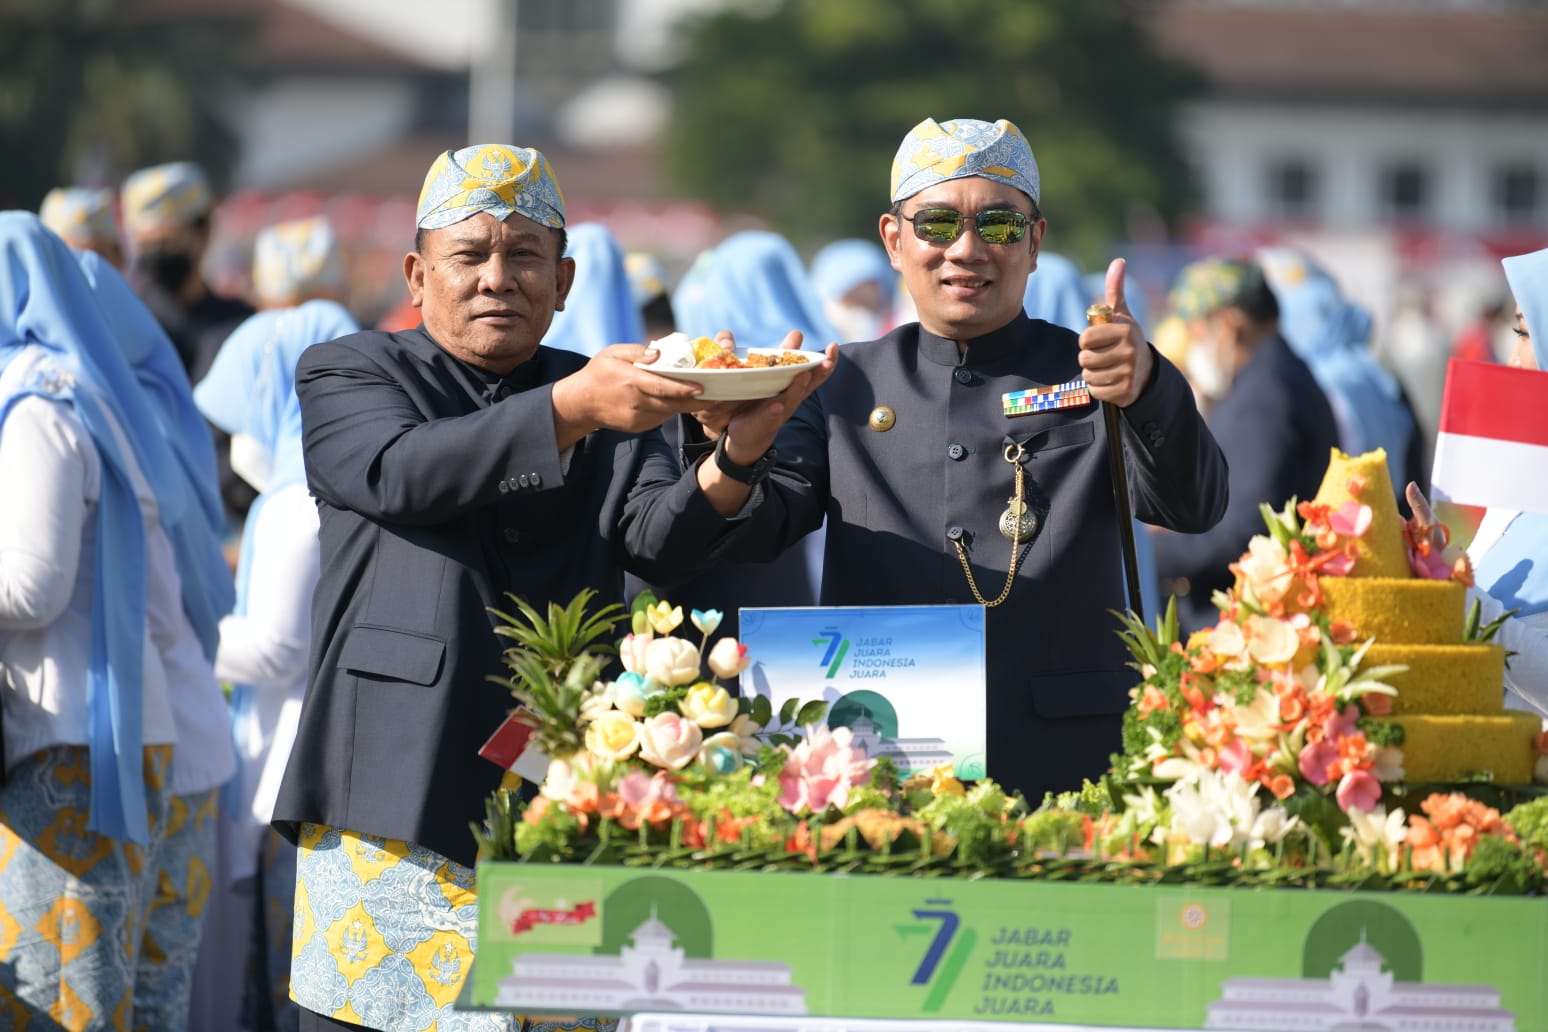 Hadirkan Ragam Budaya dalam Peringatan HUT ke-77 Provinsi Jawa Barat